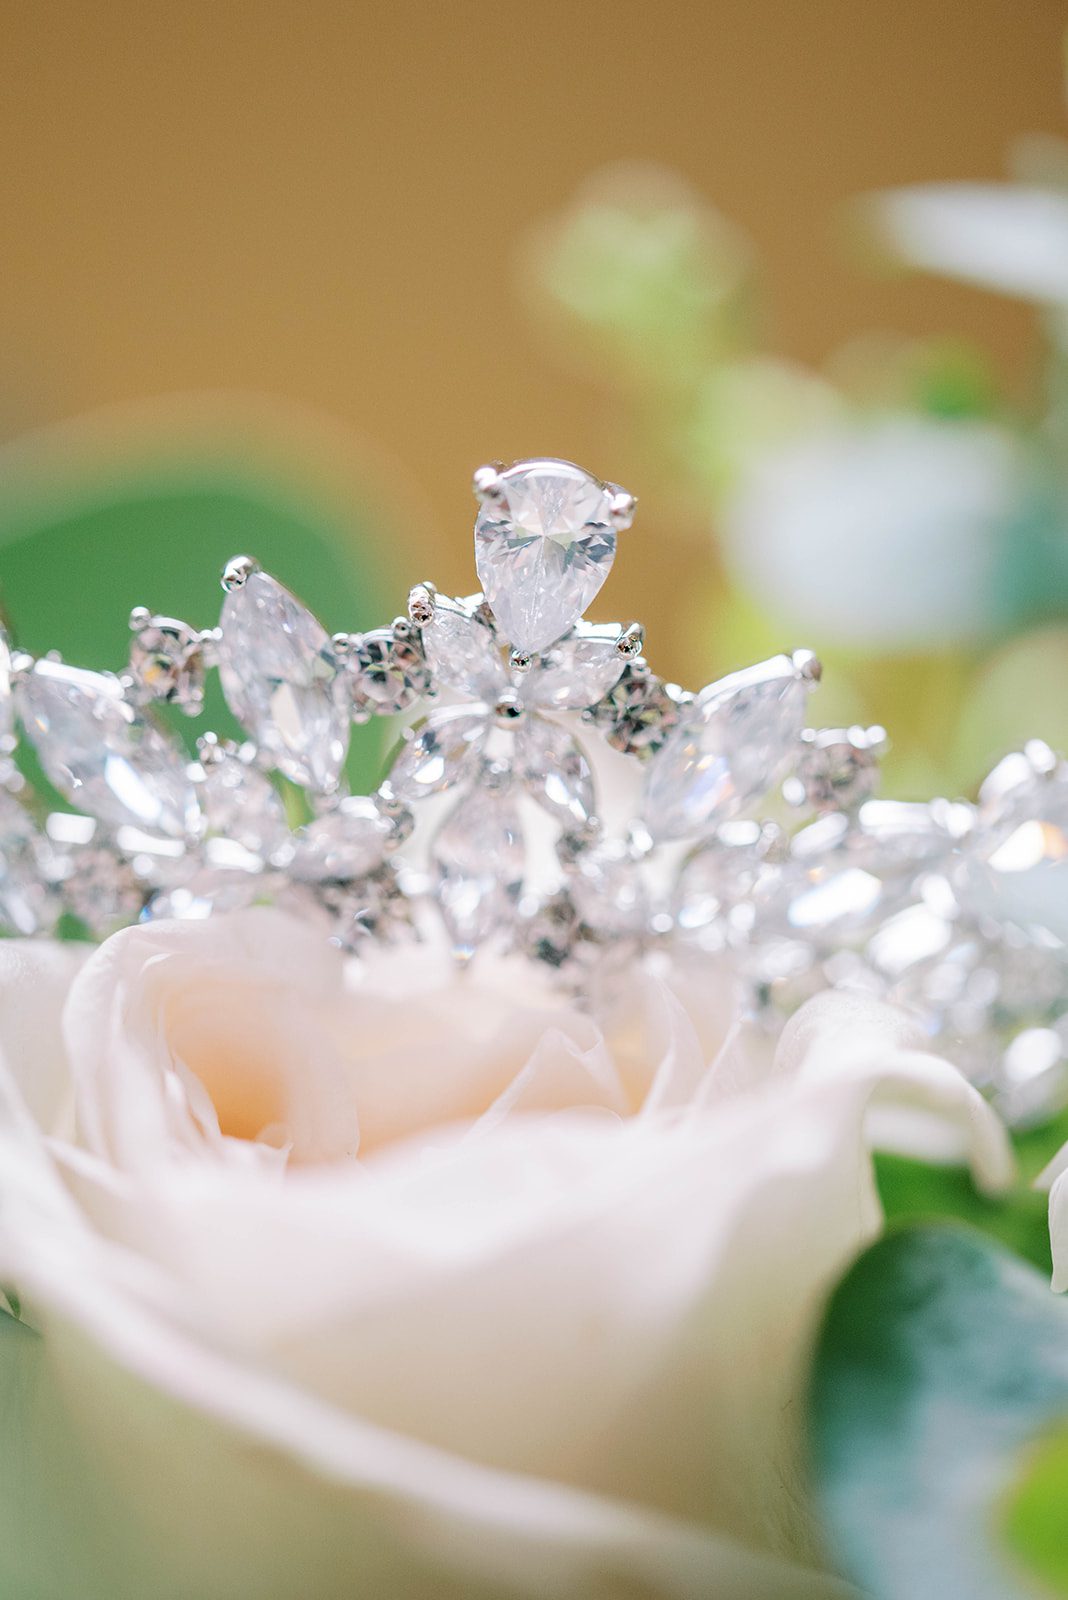 diamond tiara on top of some wedding day roses